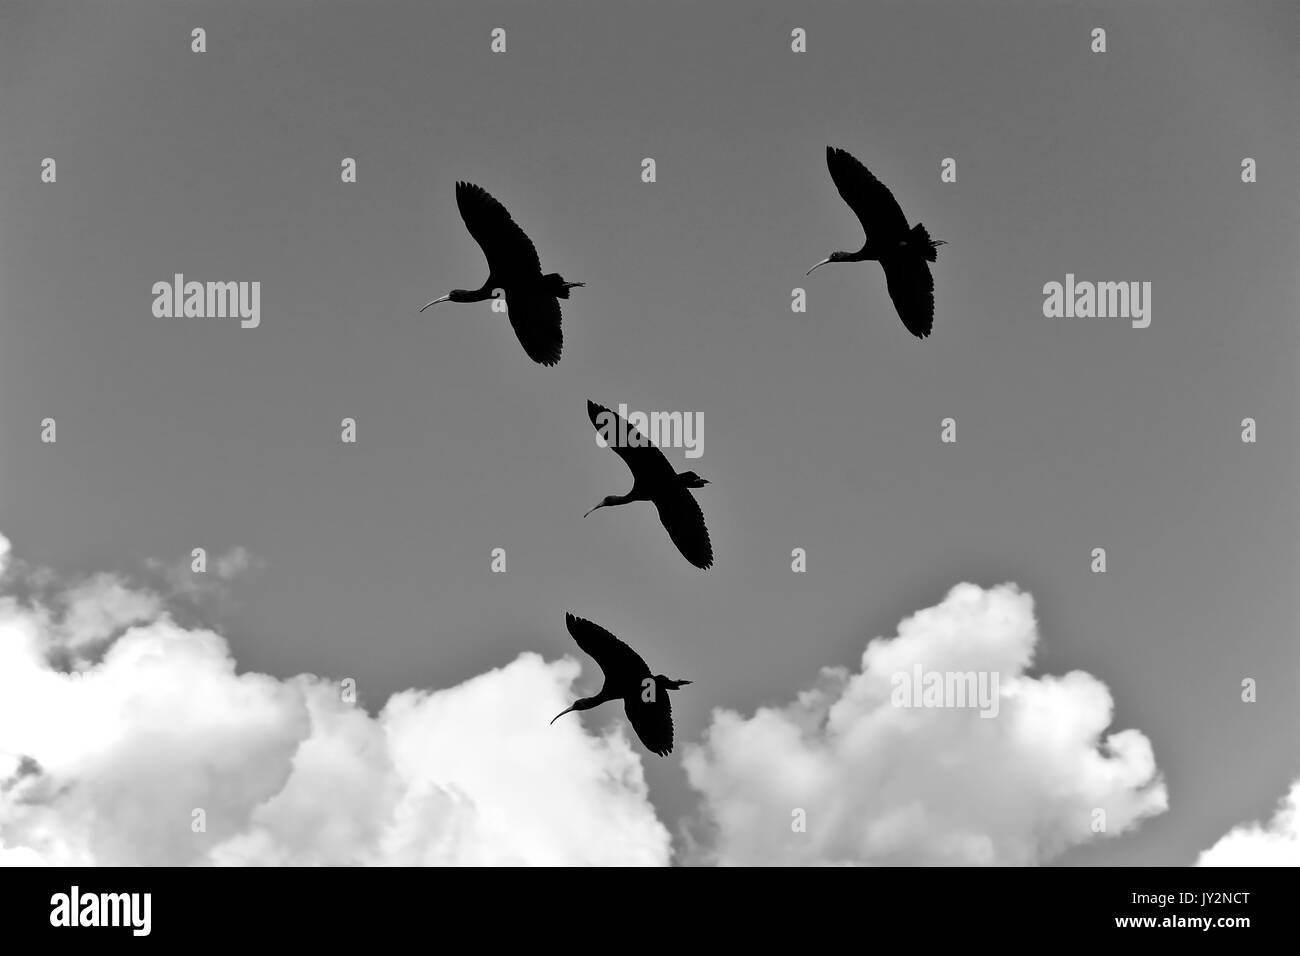 quequeña bandadad de Yanavicos (Plegadis ridgwayi) cruzando el cielo. Stock Photo